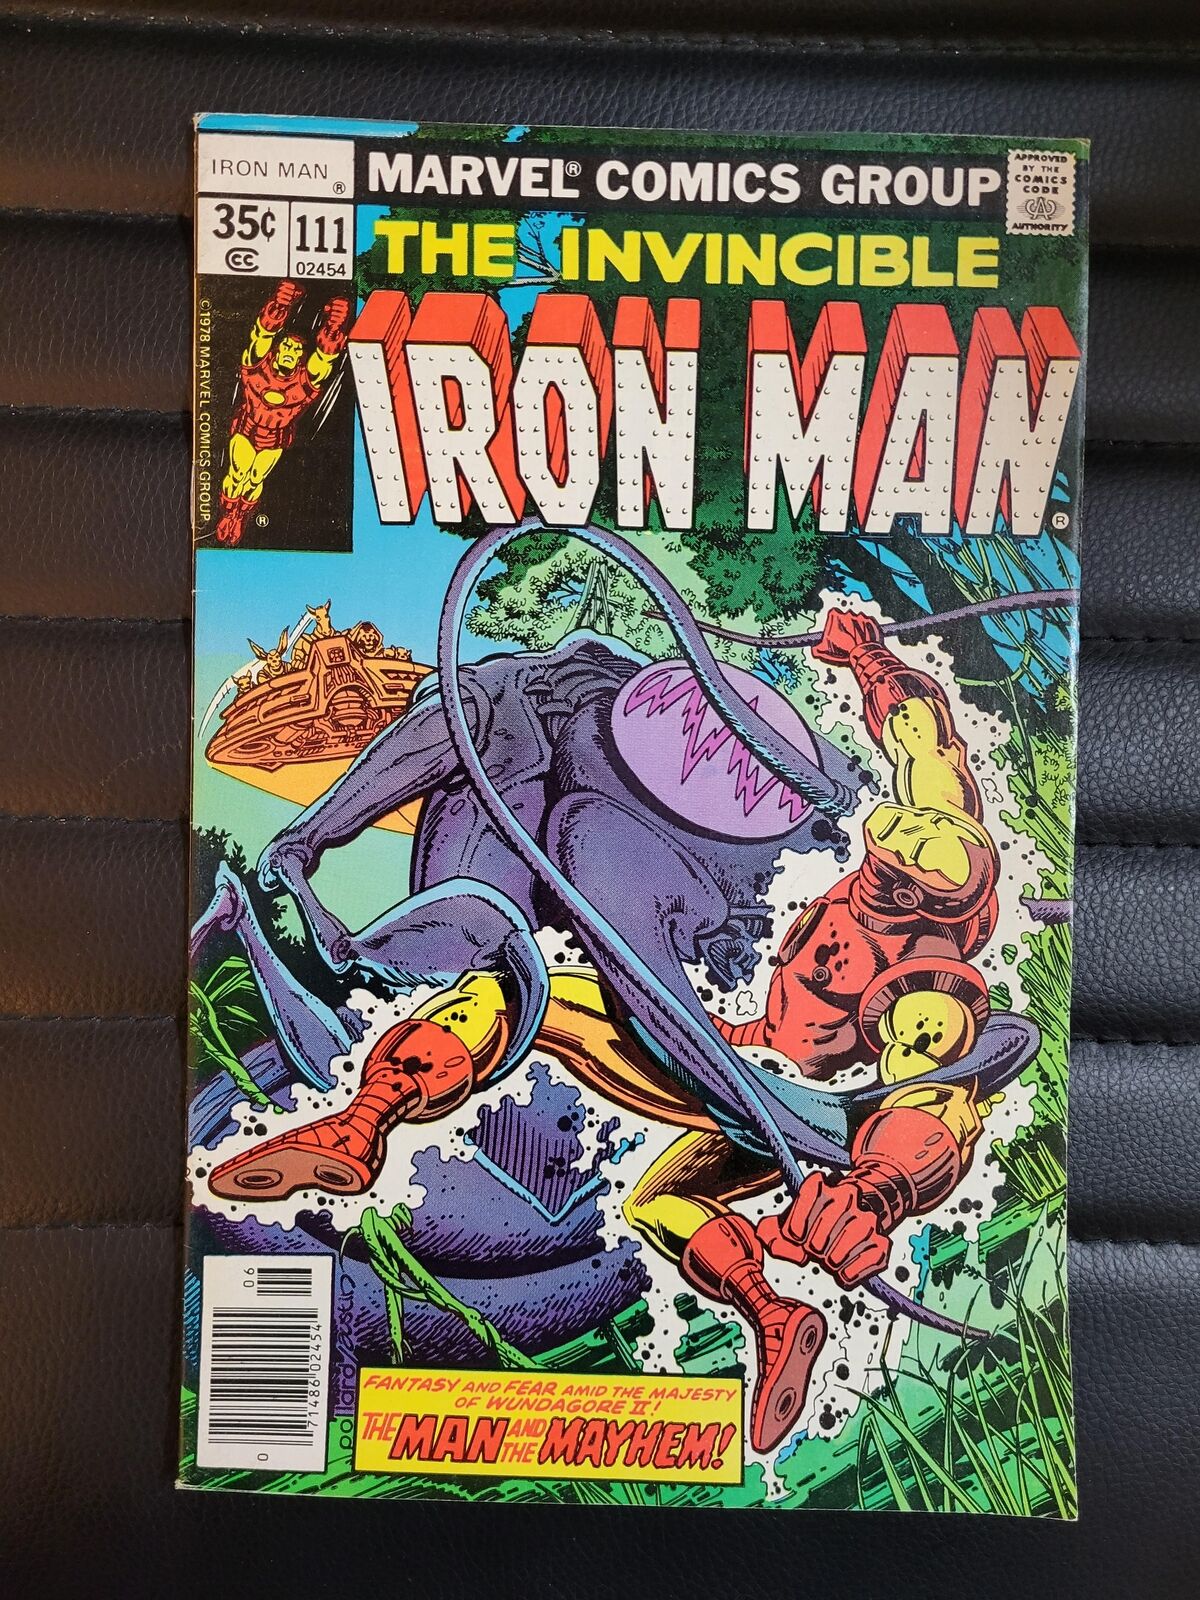 Iron Man #111 VF+ | 8.5 + Many Pics! 